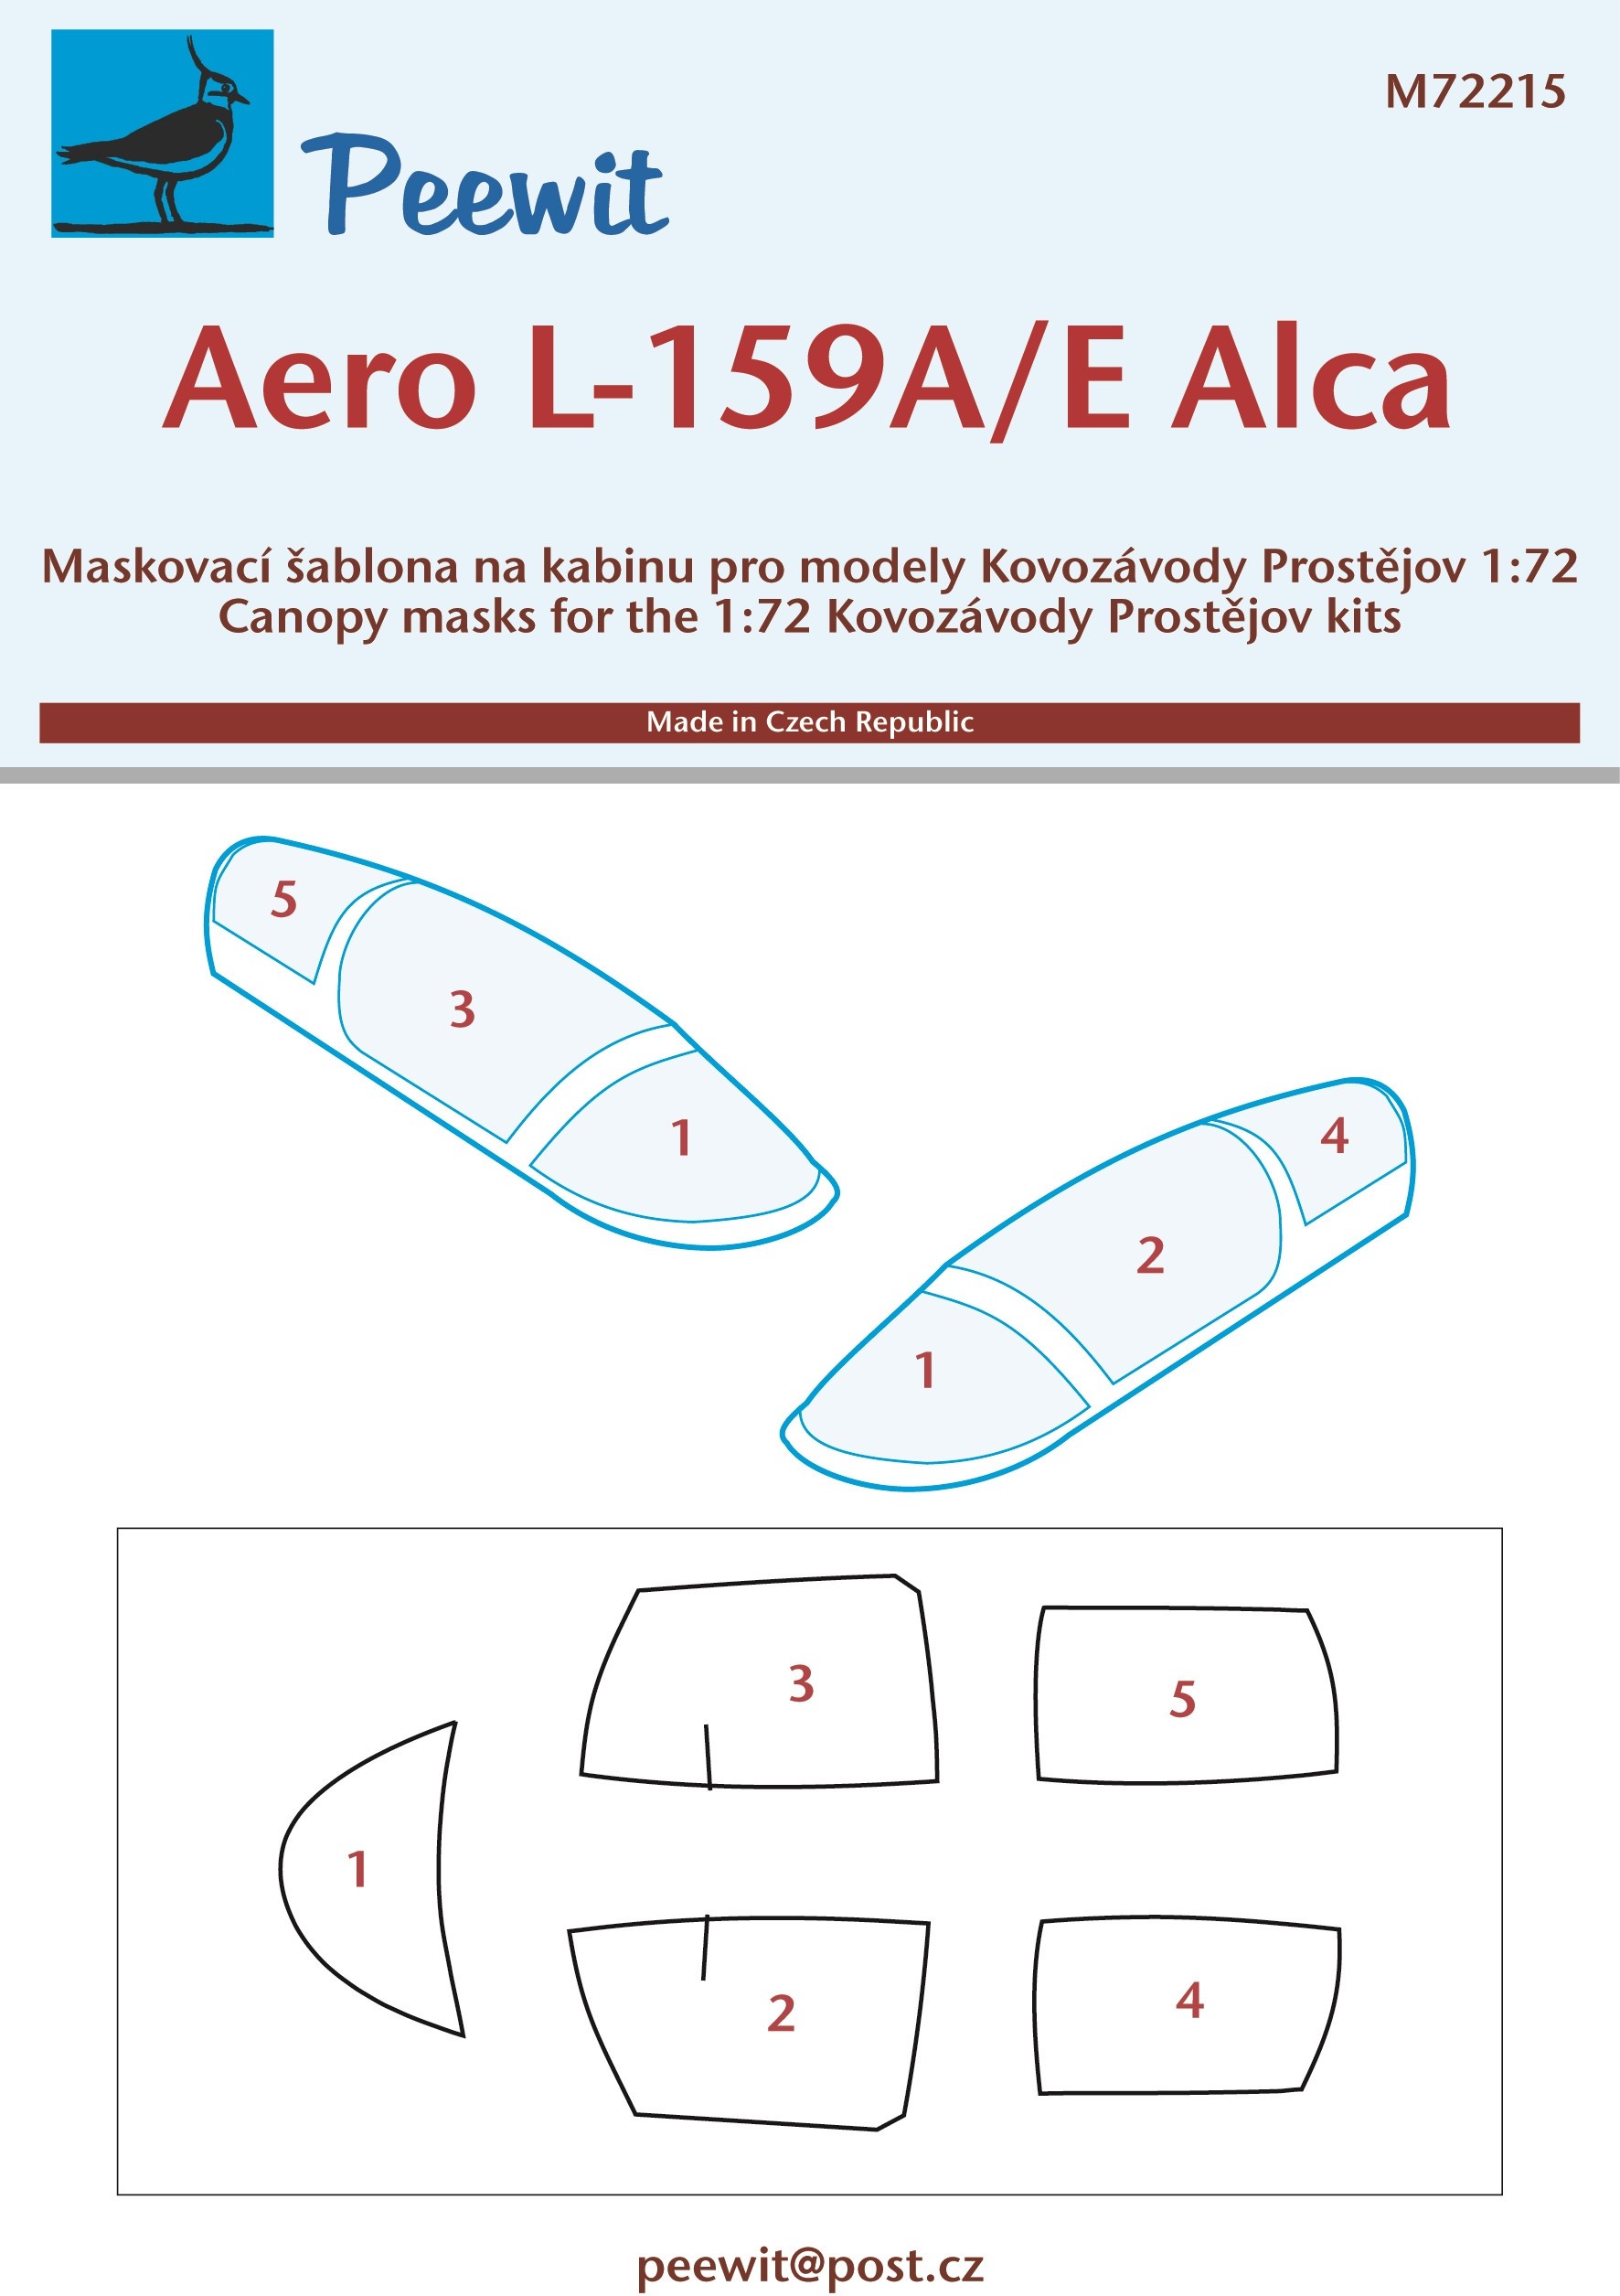  Peewit Aero L-159A / E Alca (conçu pour être utilisé avec les kits Ko